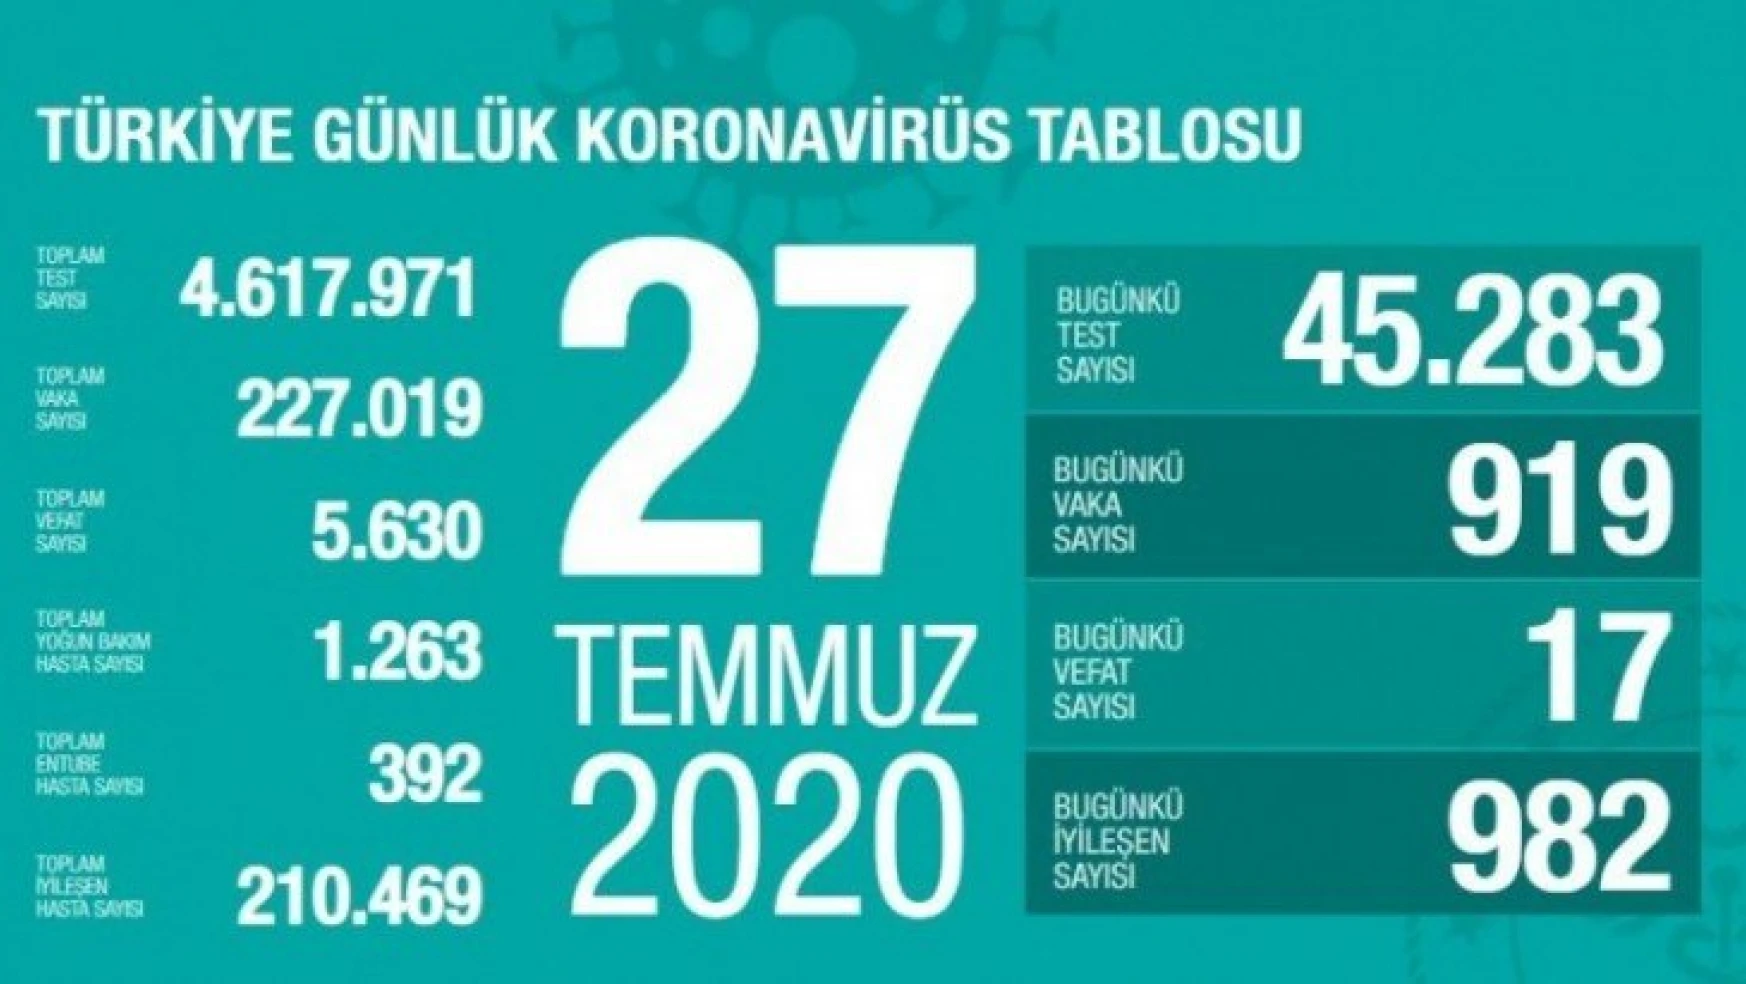 Türkiye'de son 24 saatte 919 kişiye Kovid-19 tanısı konuldu